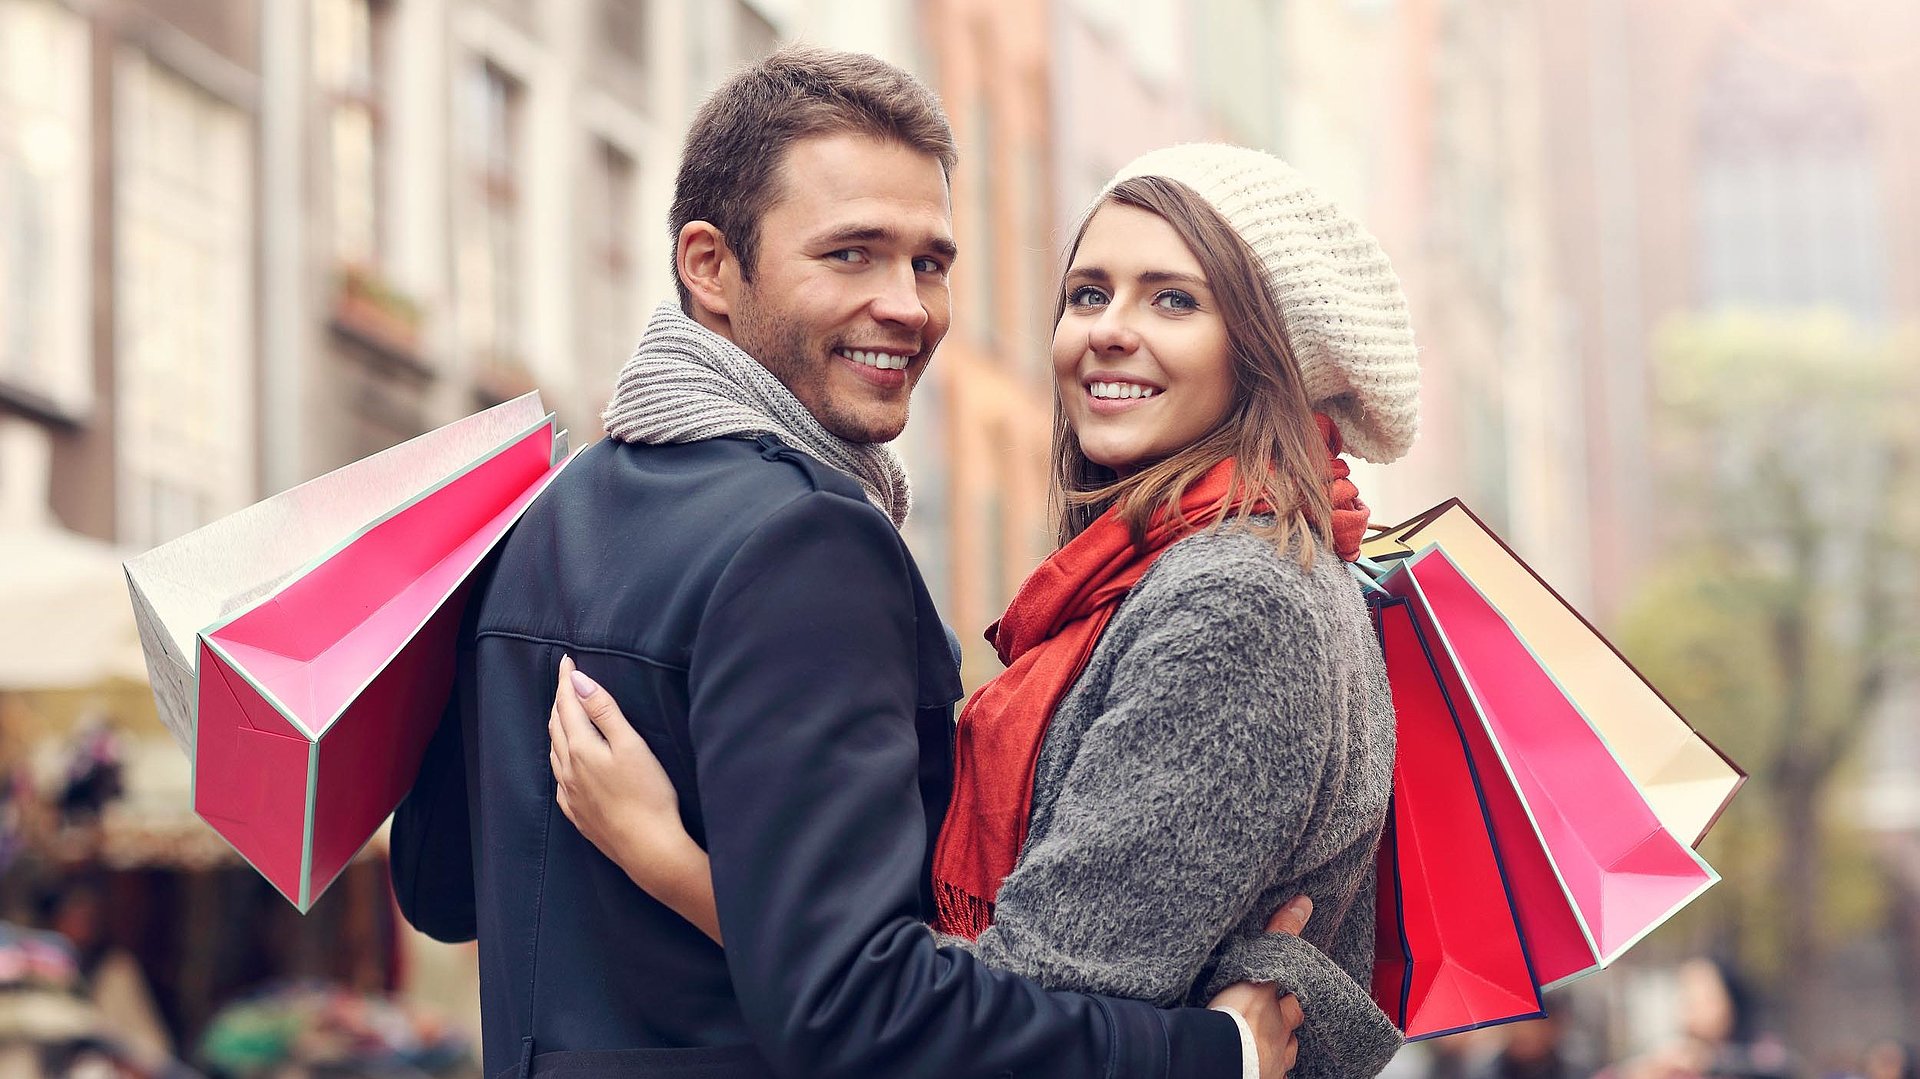 Einkaufen in Oberfranken - junges Paar mit Einkaufstüten lächelt in die Kamera